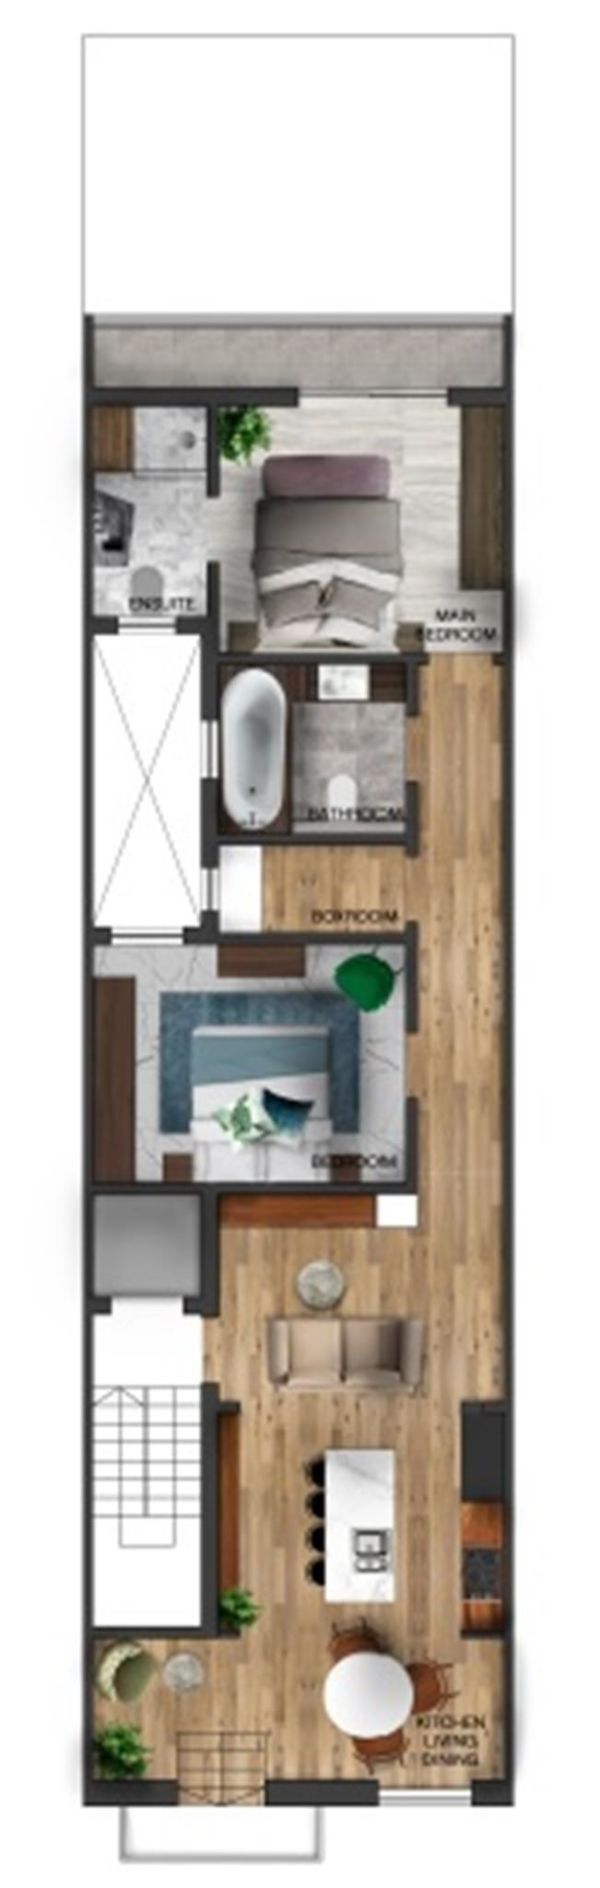 Gzira Apartment - Ref No 004128 - Image 2